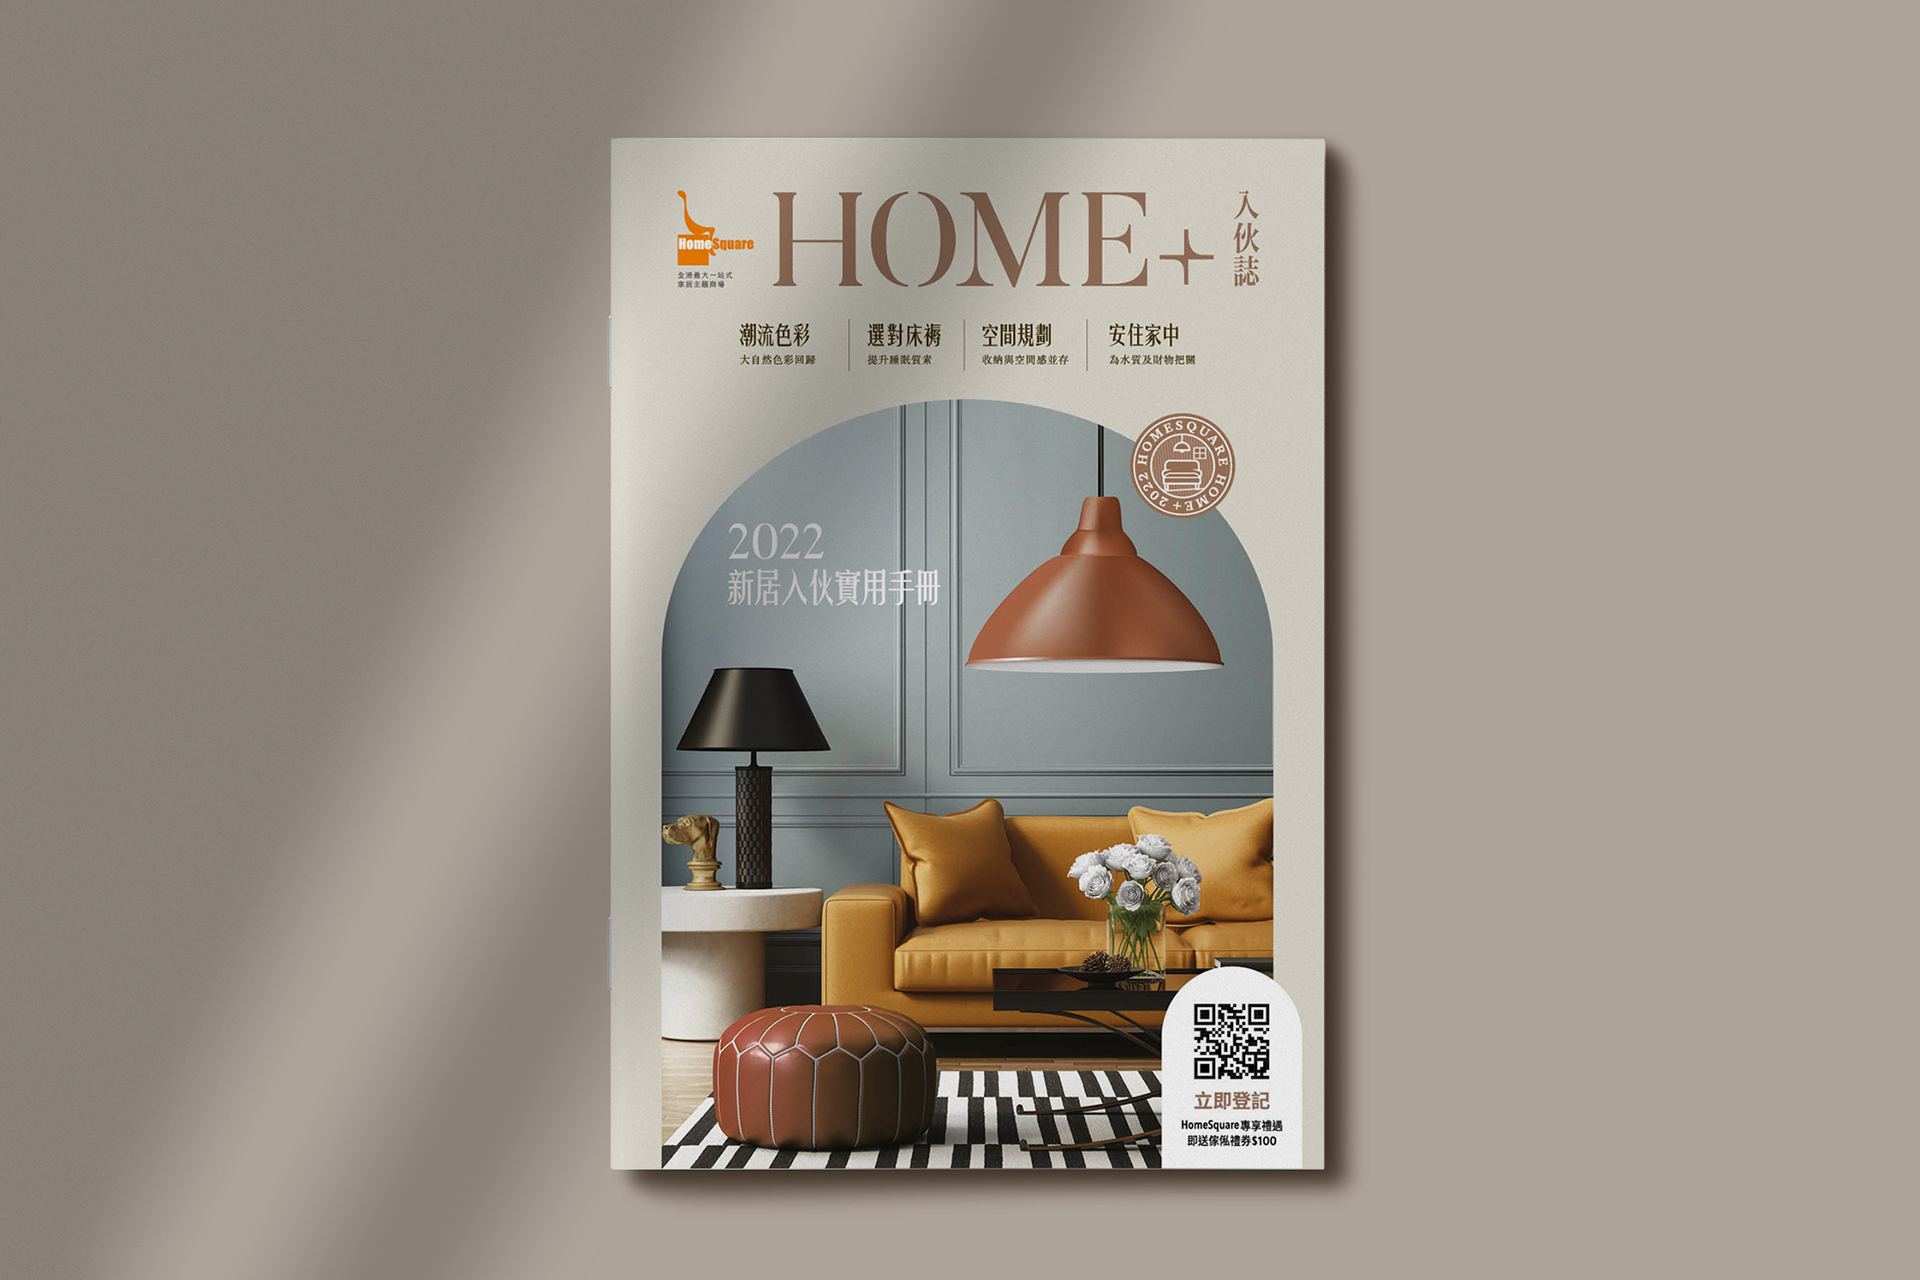 HomeSquare – HOME+ 2022